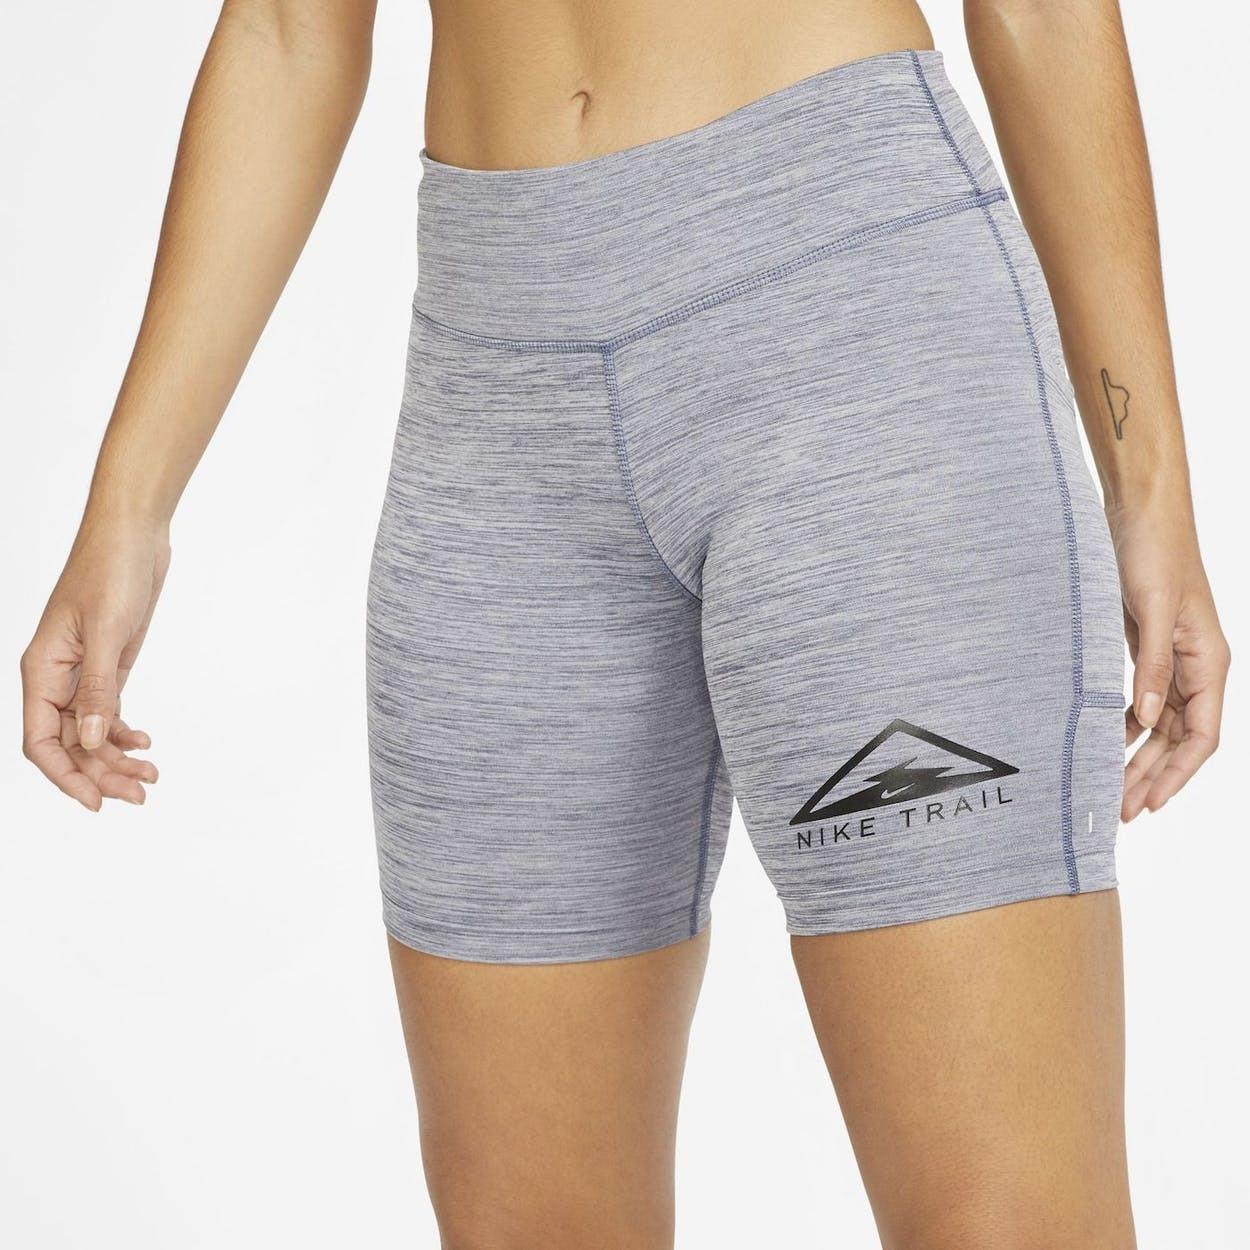 Nike Womens Fast 7' Trail Running Short Tights Gym Yoga Training - Grey - L